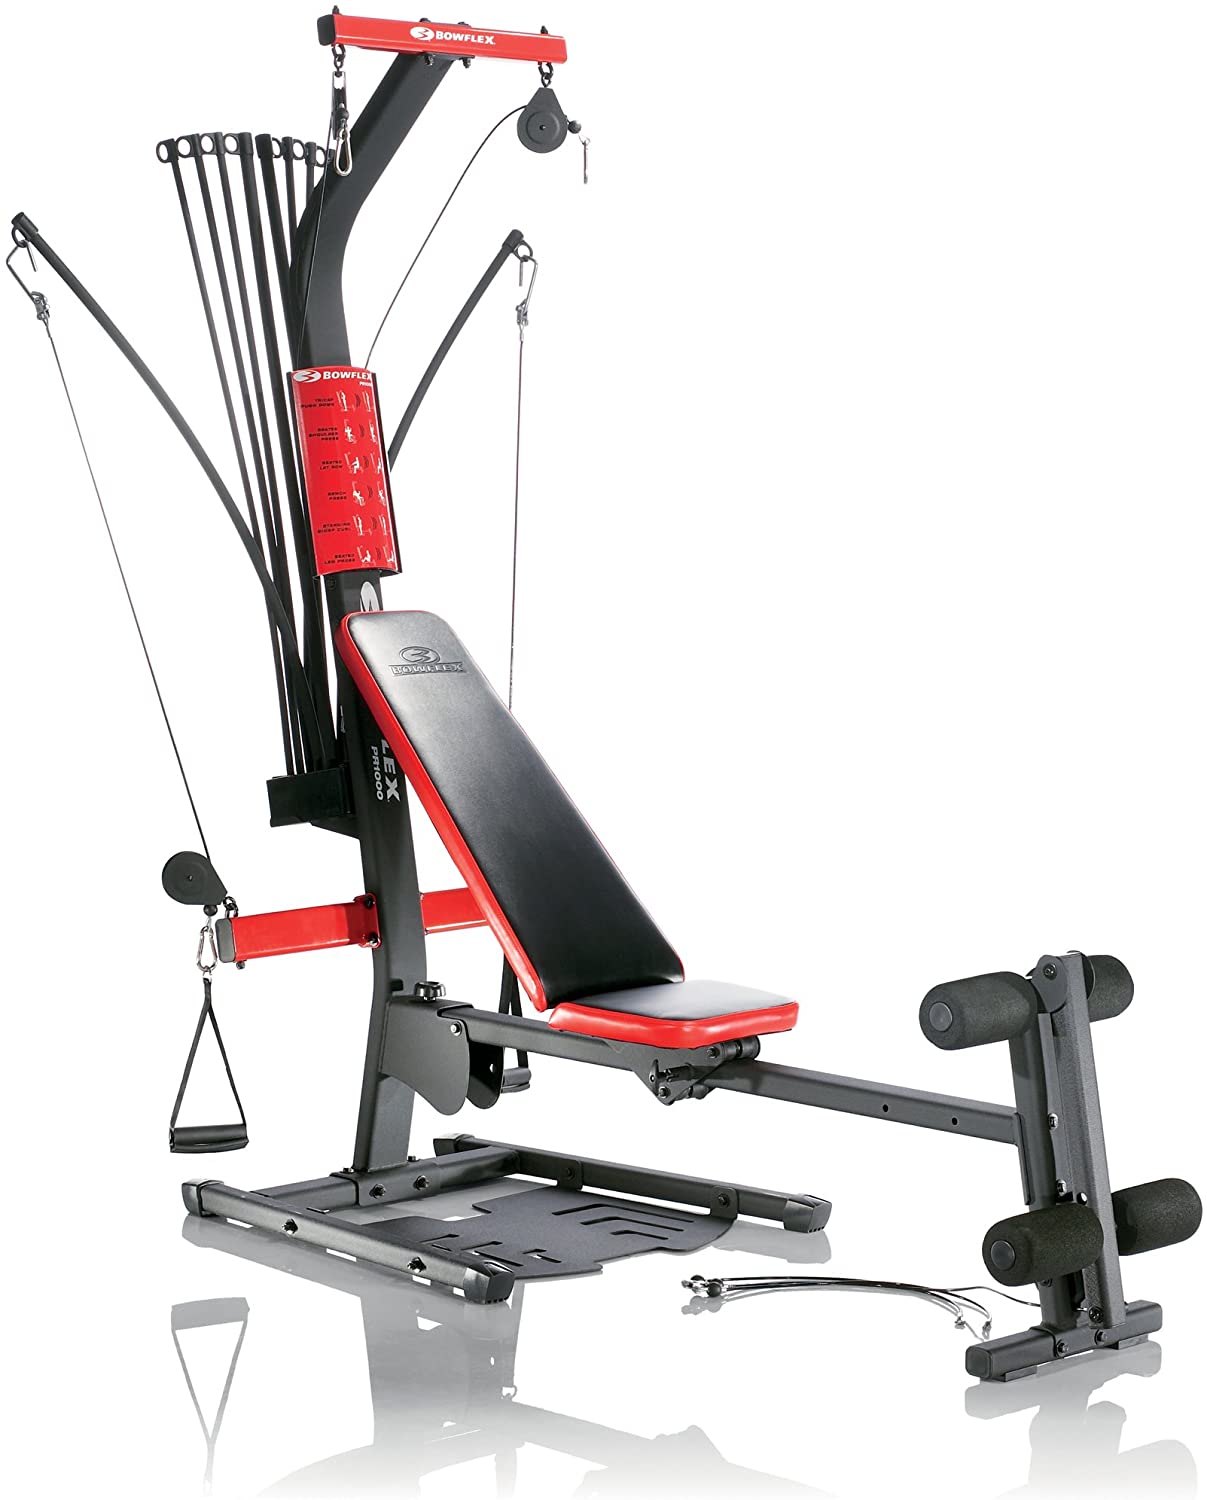 Bowflex PR3000 home gym system